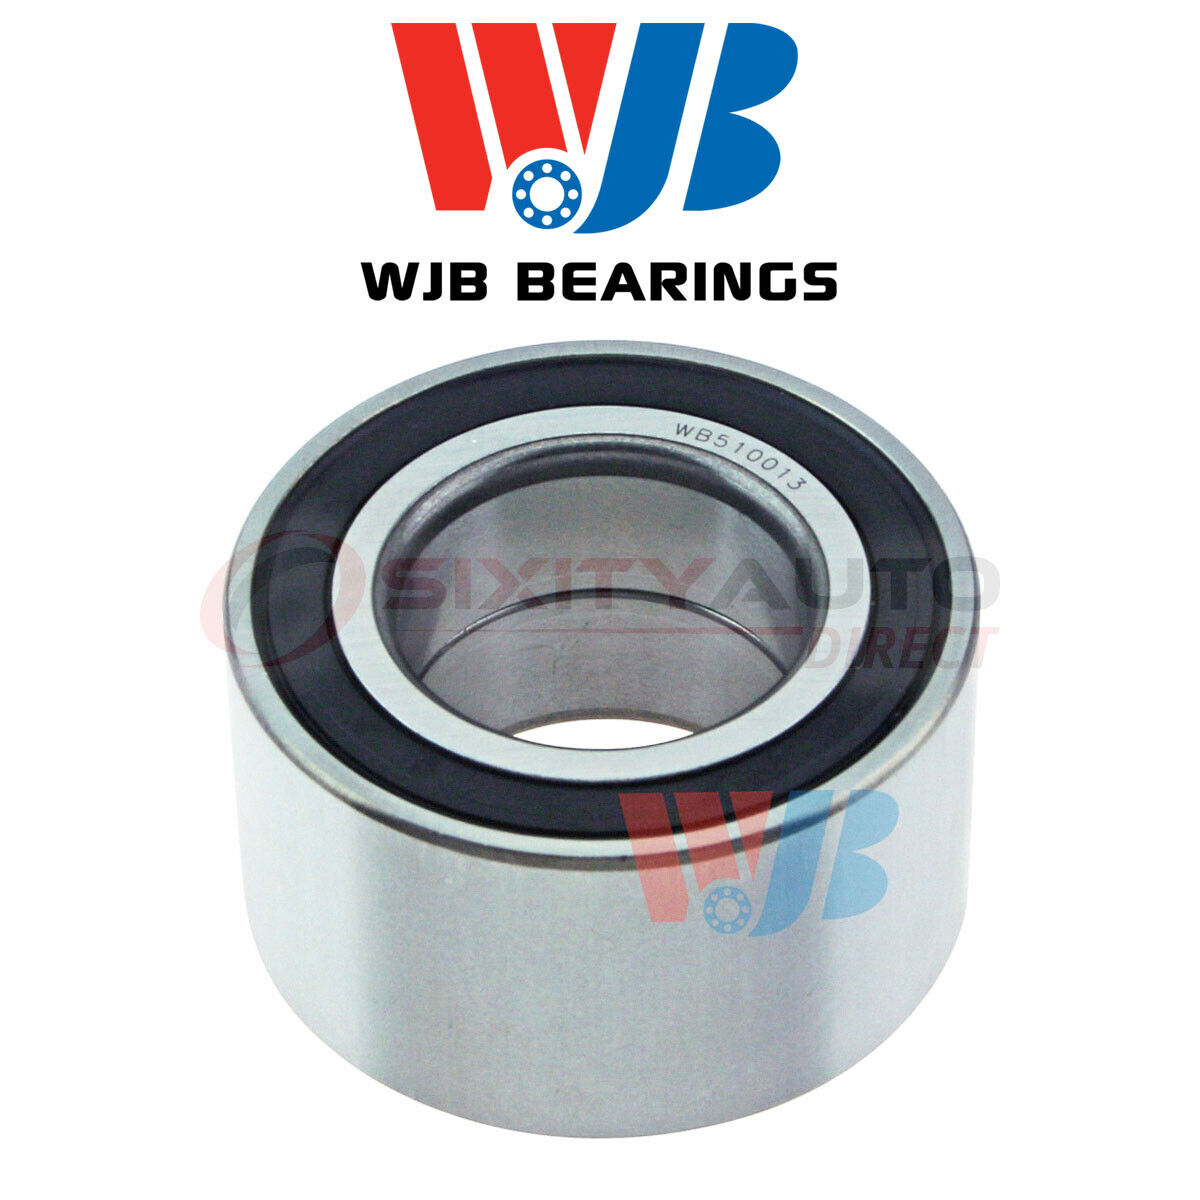 WJB Wheel Bearing for 1991-1999 Mercury Tracer 1.8L 1.9L 2.0L L4 - Axle Hub fg